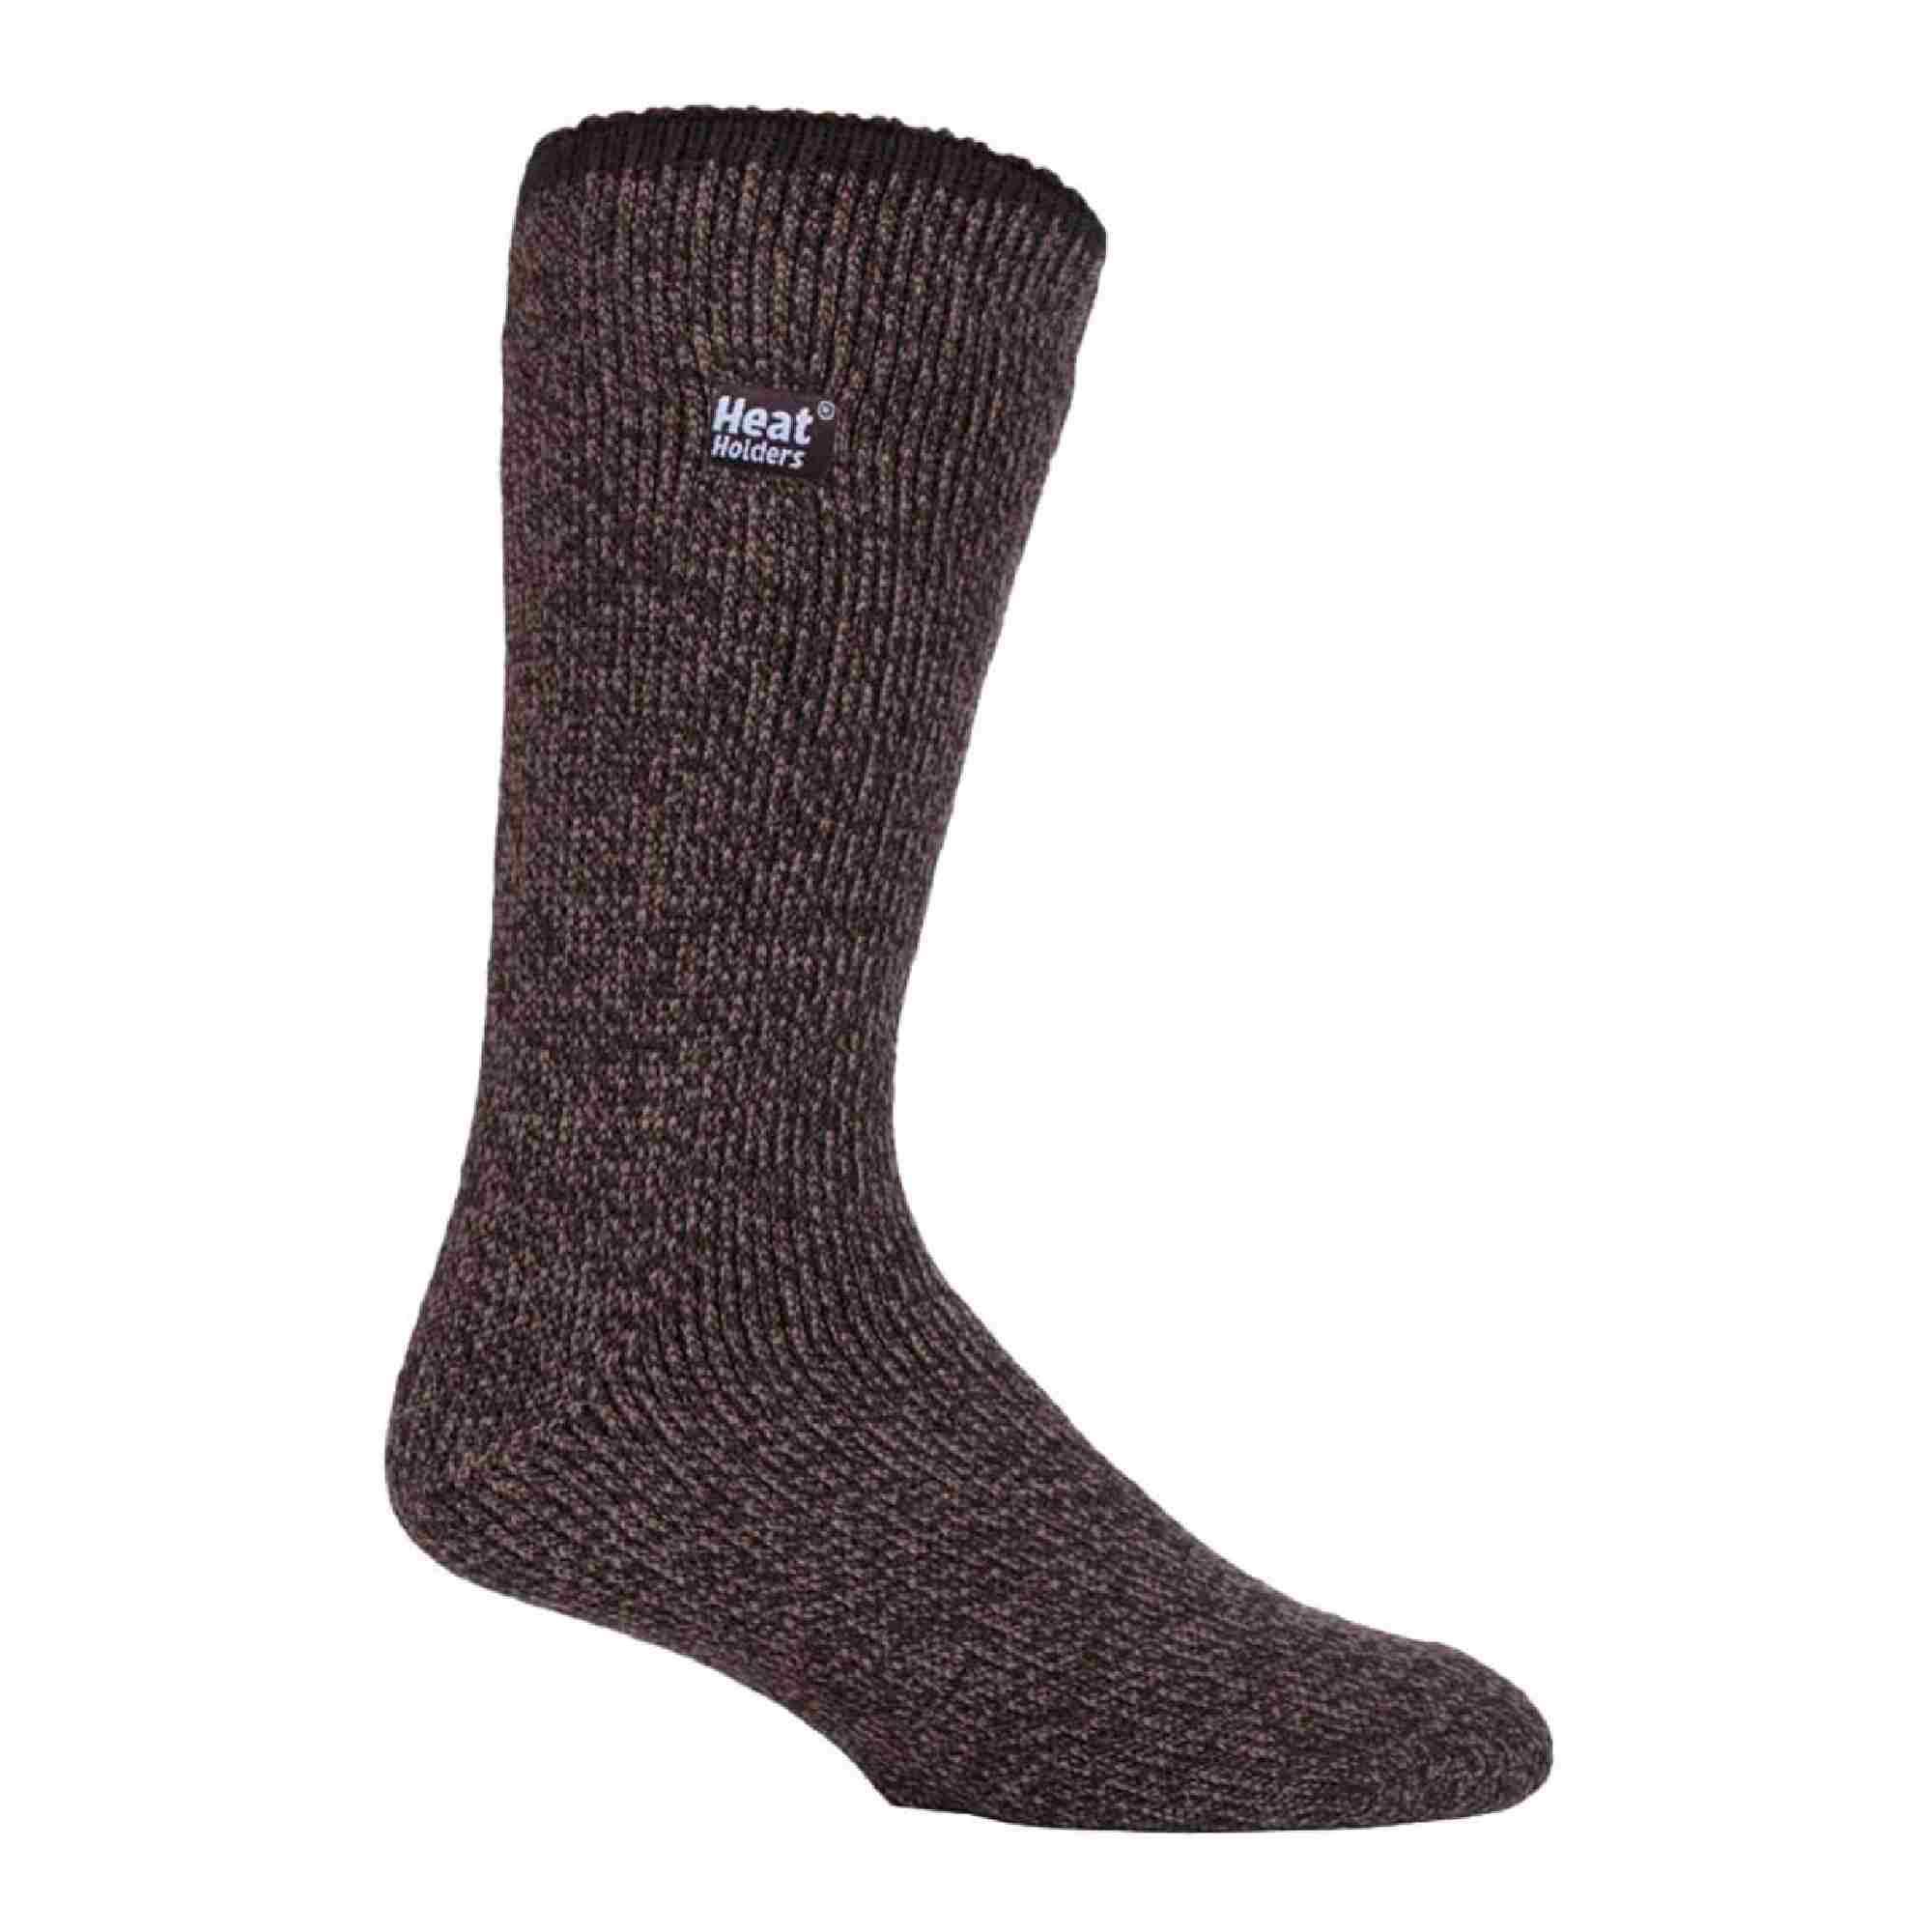 HEAT HOLDERS Mens Outdoor Merino Wool Knee High Long Thermal Socks for Winter